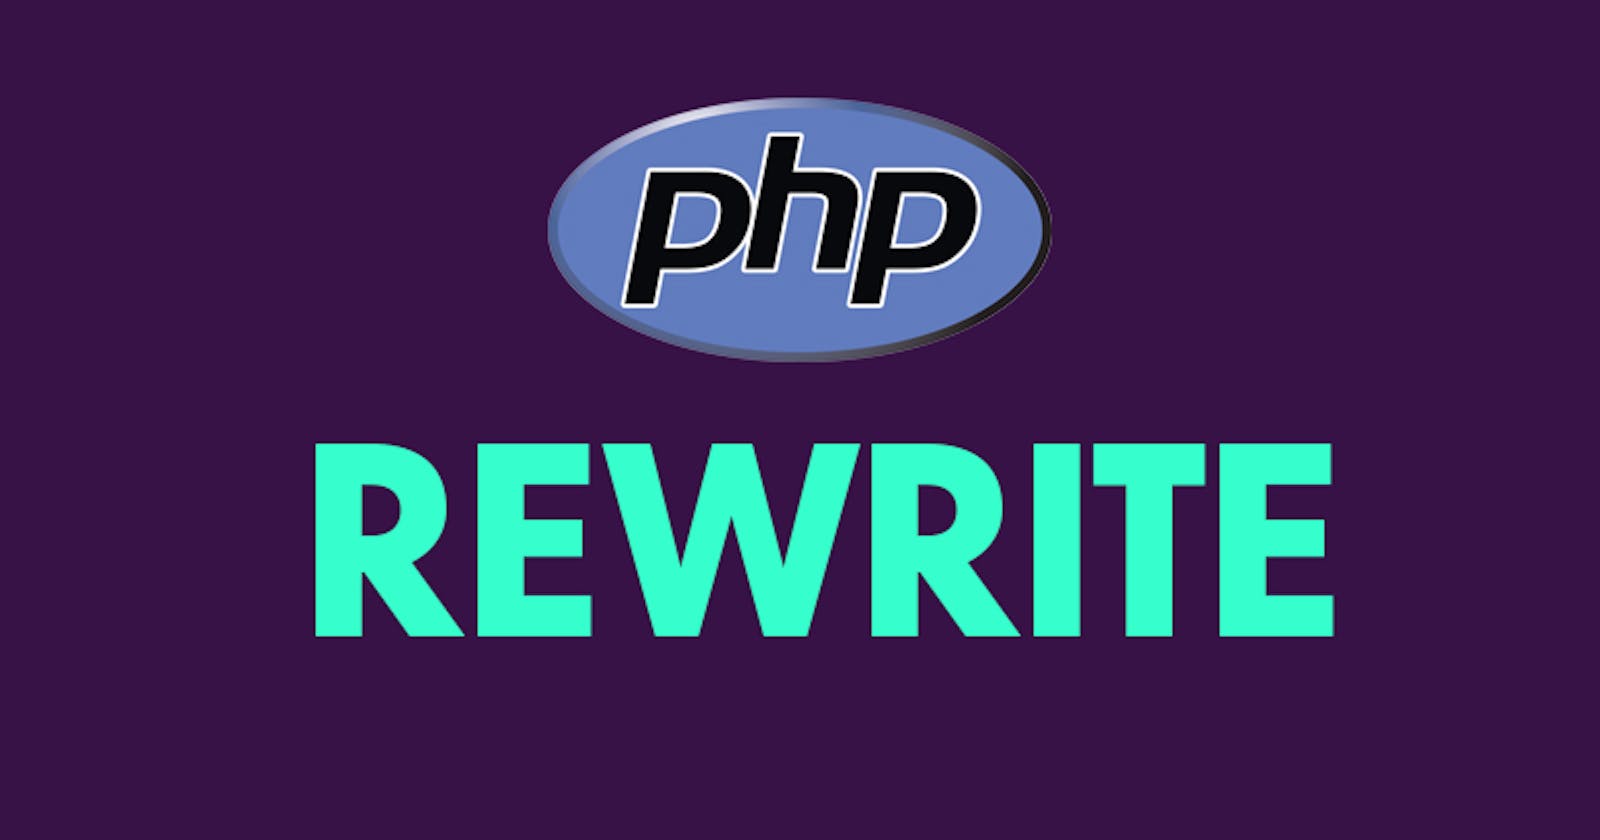 Habilitar rewrite en Apache con PHP